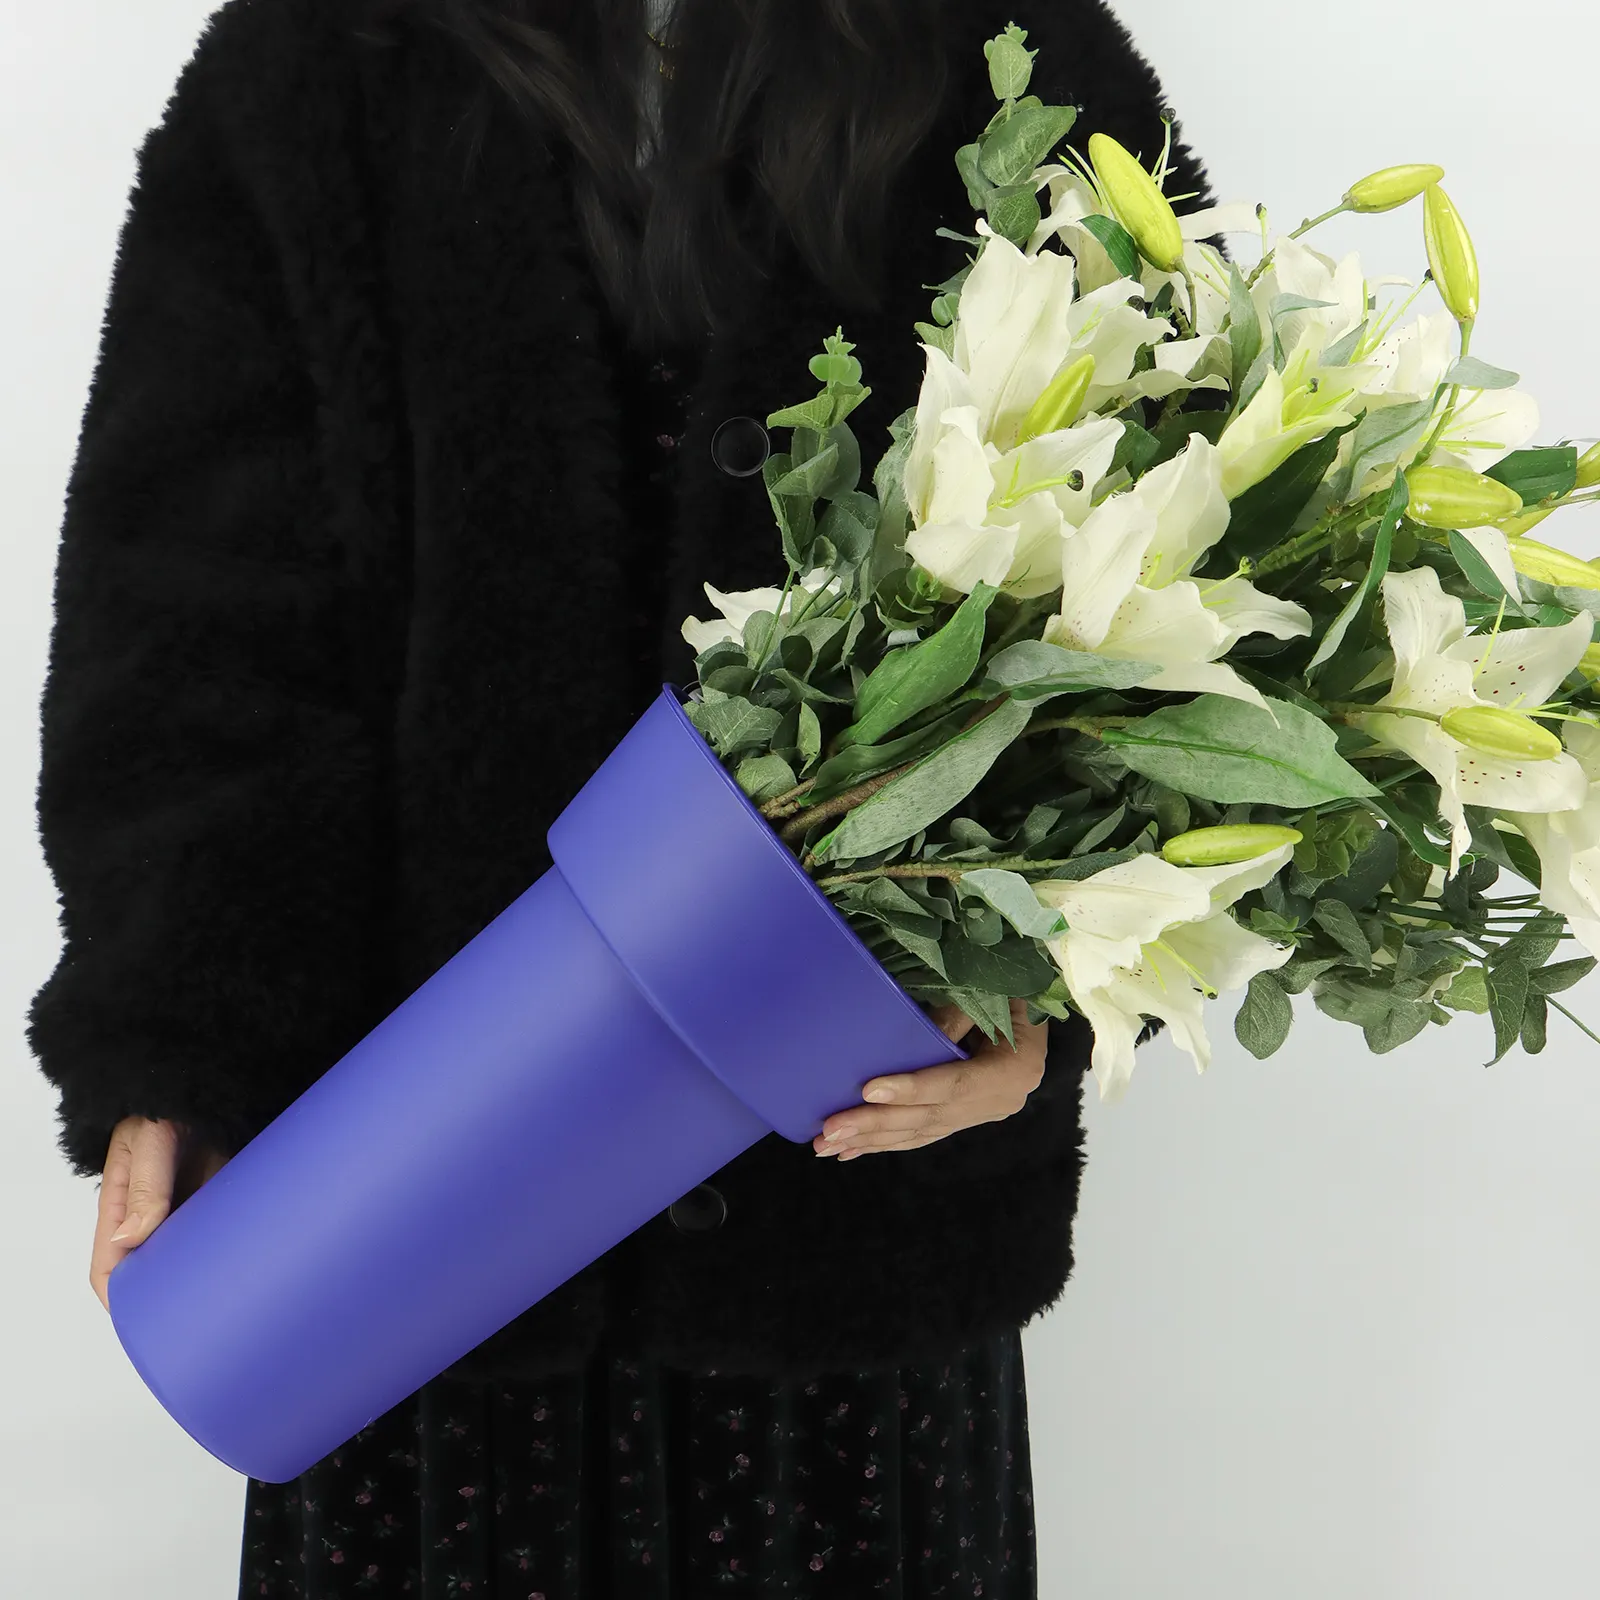 Pot de vase de réveil rond/carré en plastique de seau de fleurs fraîches d'approvisionnement d'usine pour l'usage de fleuriste pour le centre commercial